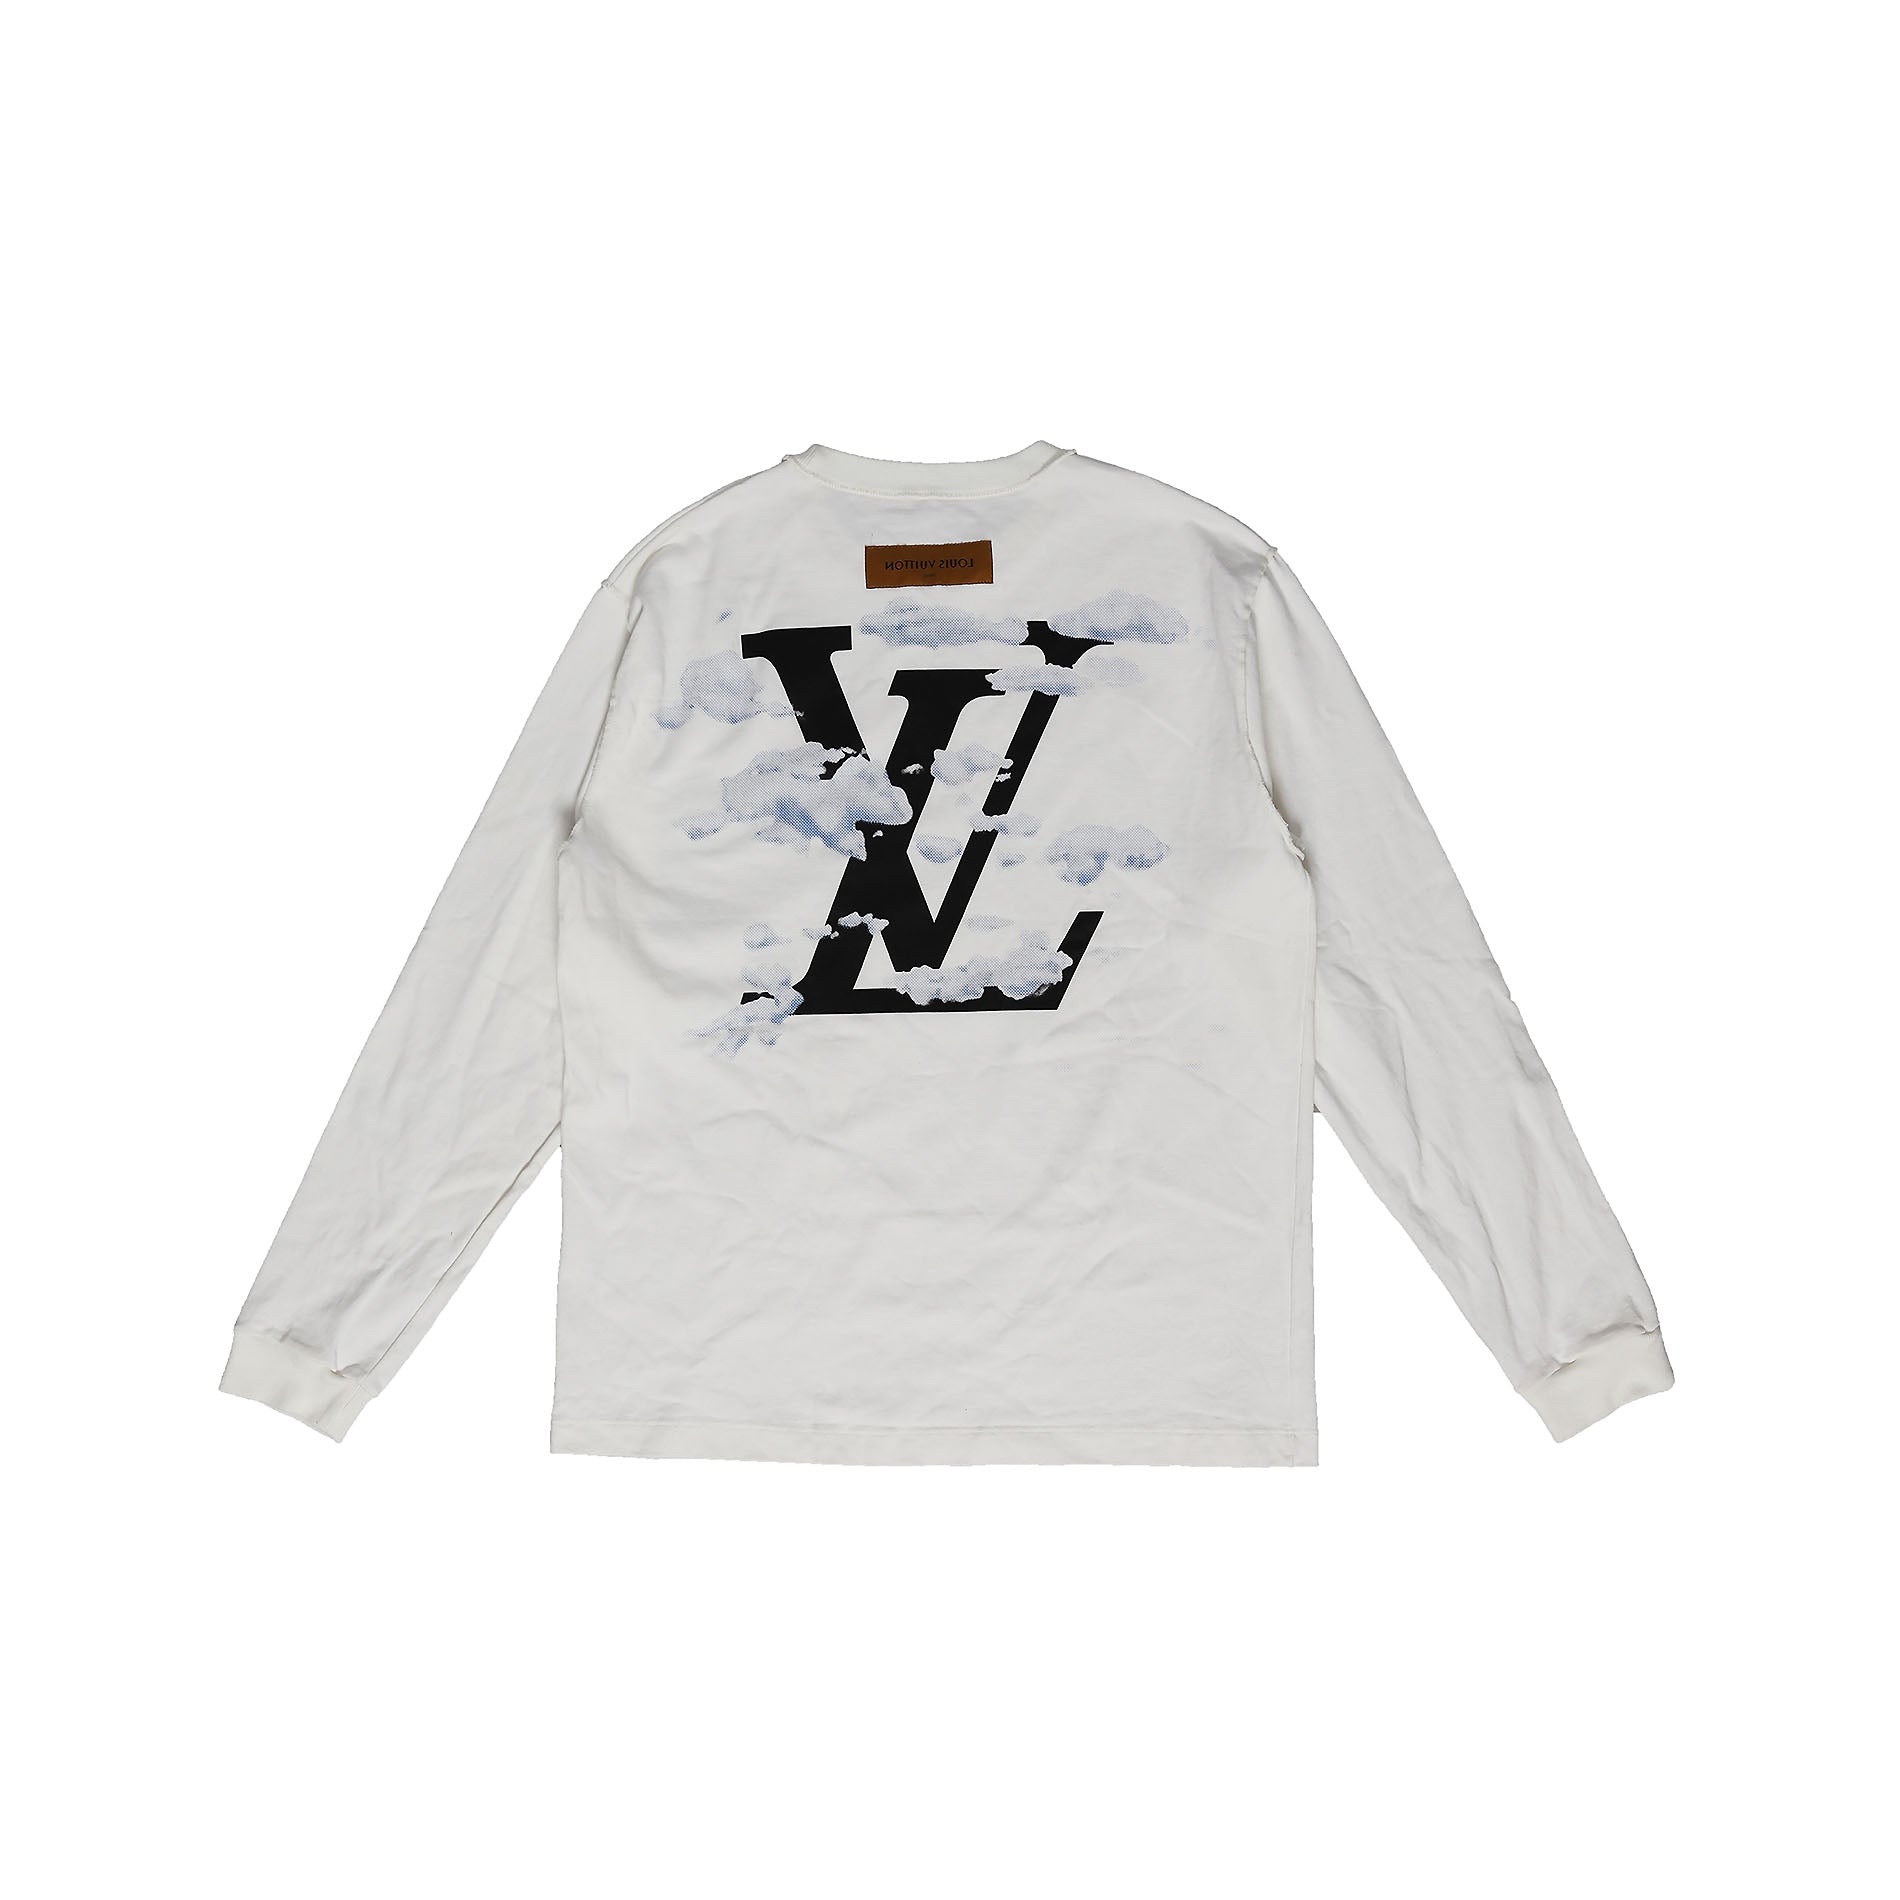 Shop Louis Vuitton Men's T-Shirts